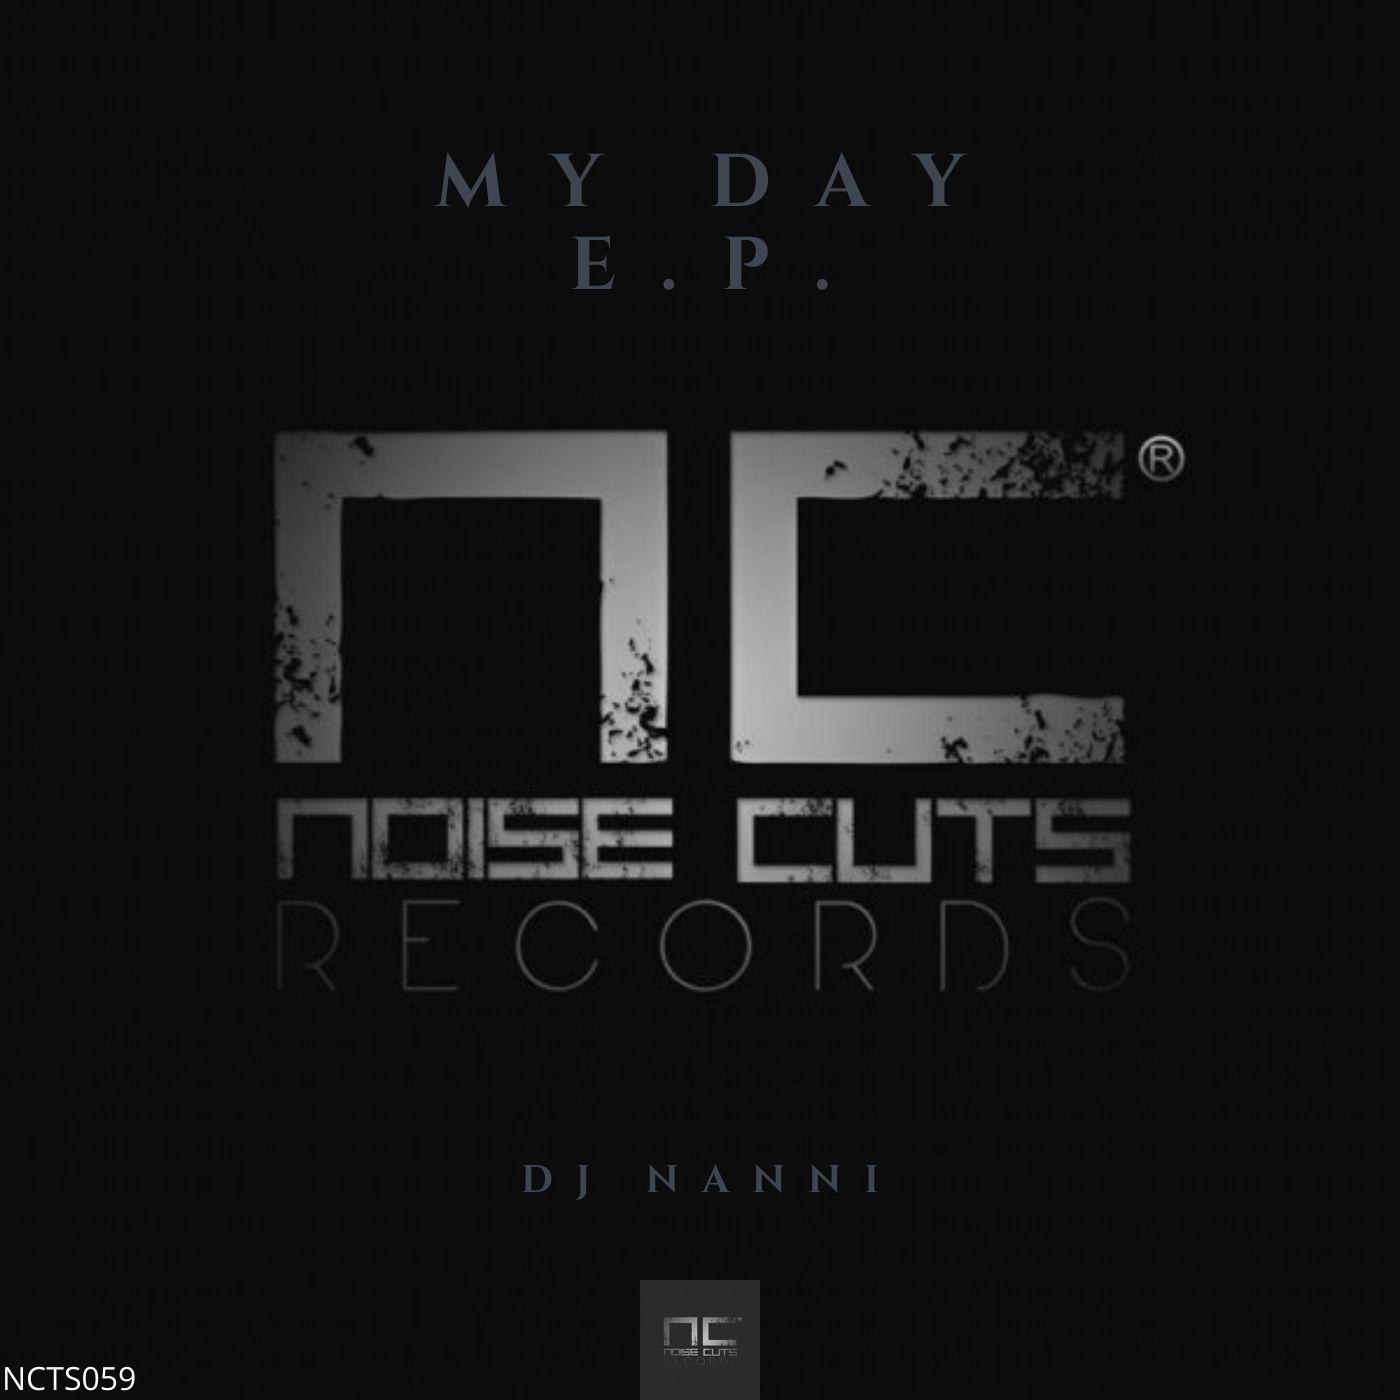 My Day E.p. - DJ Nanni - 专辑 - 网易云音乐